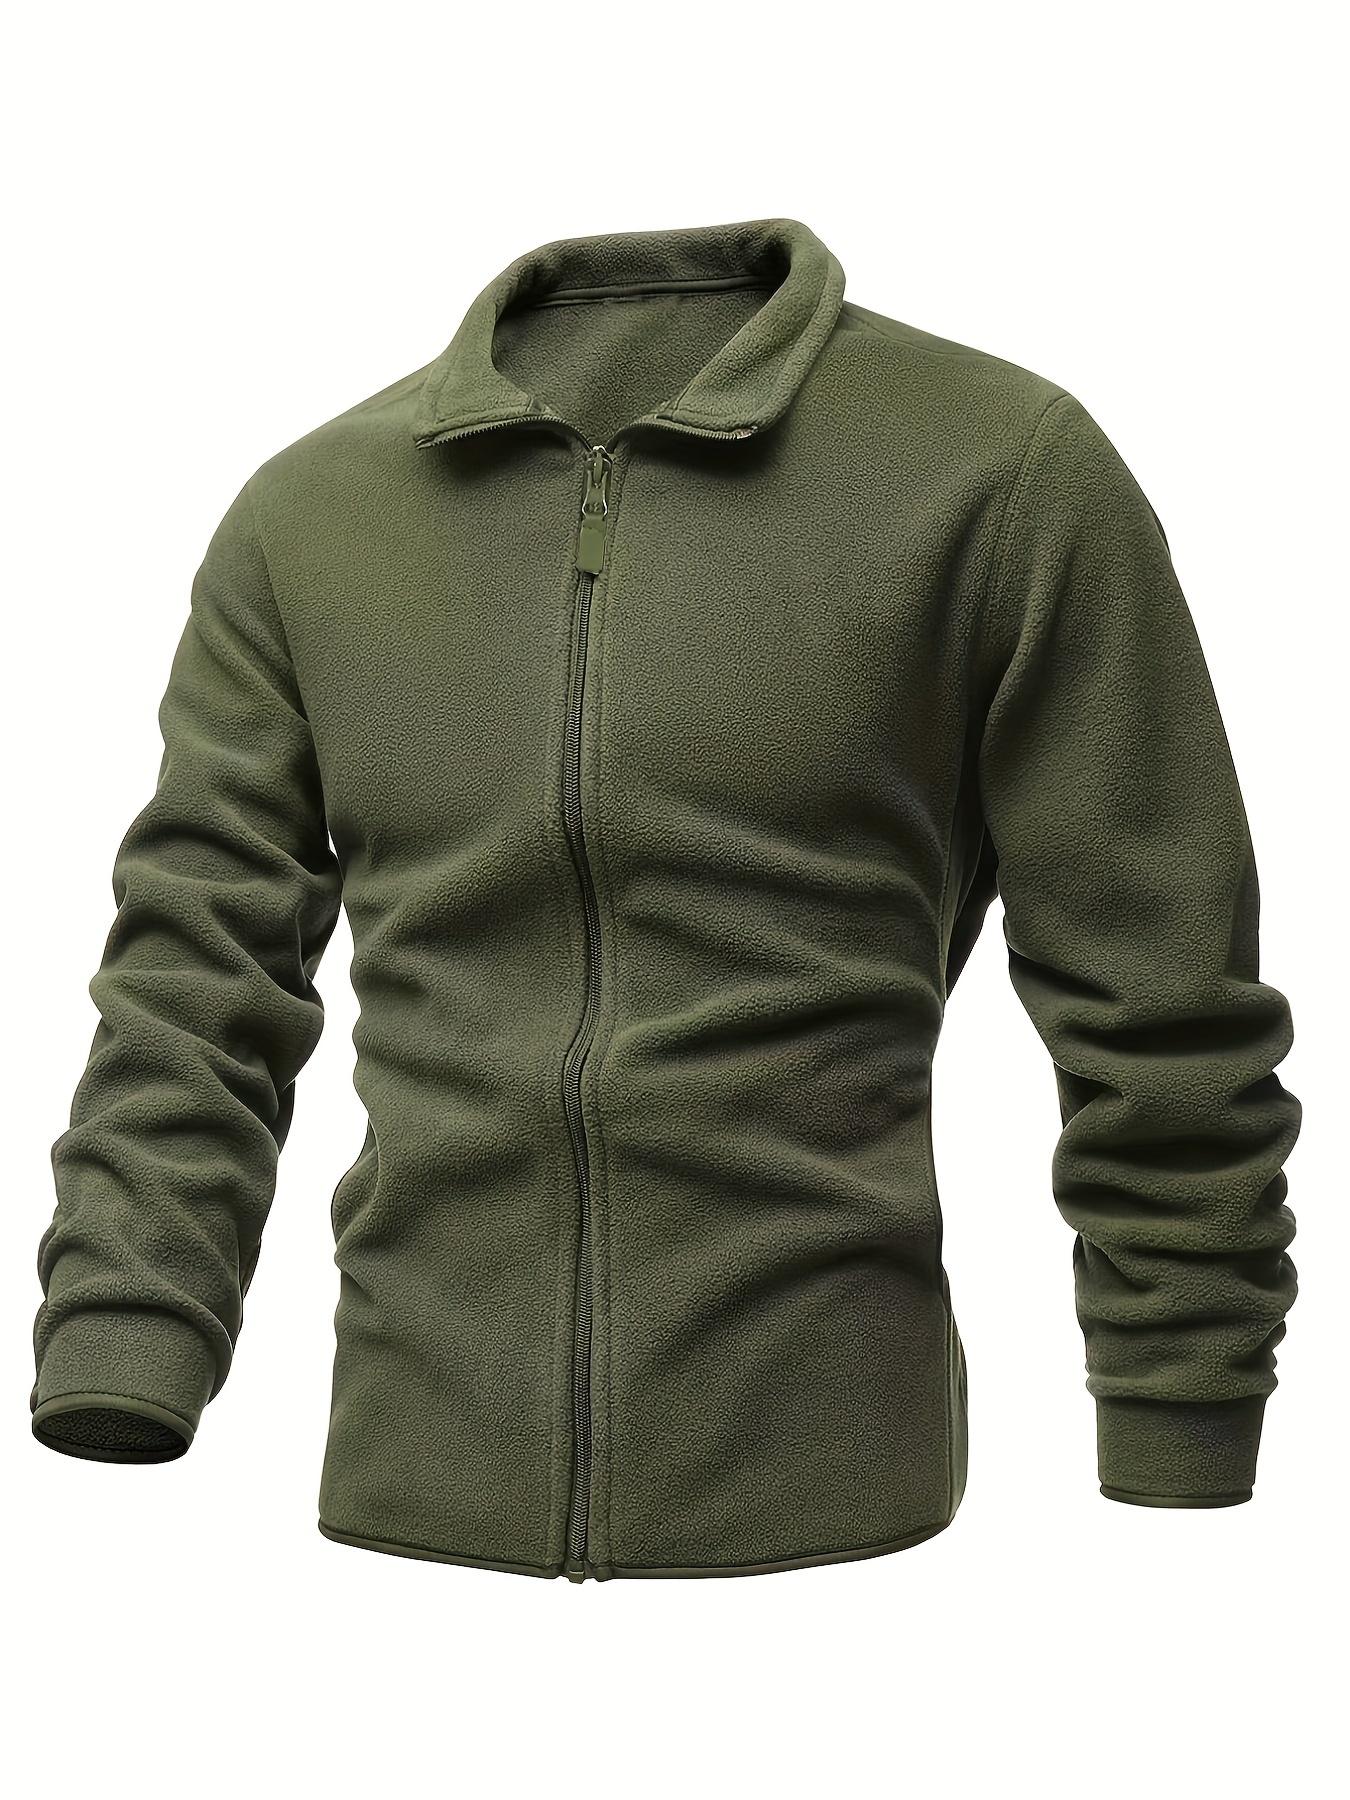 Men's Casual Coat Lapel Jacket Denim Warm Fur Collar Fleece Lined Winter  Jacket